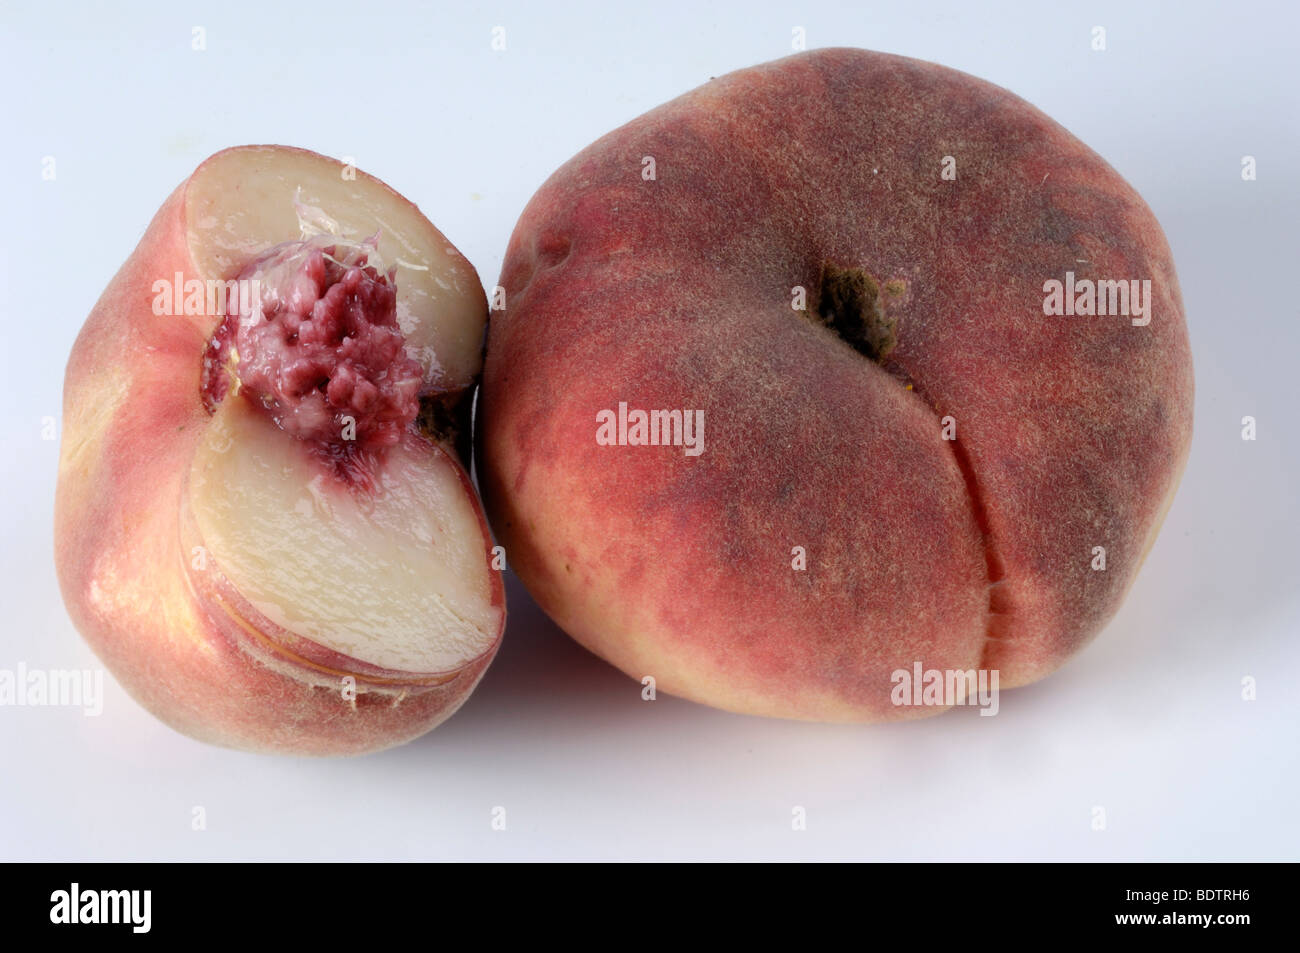 Peach, Prunus persica, Persica vulgaris, Pfirsich Weinberg, Prunus persica, Persica vulgaris Stock Photo